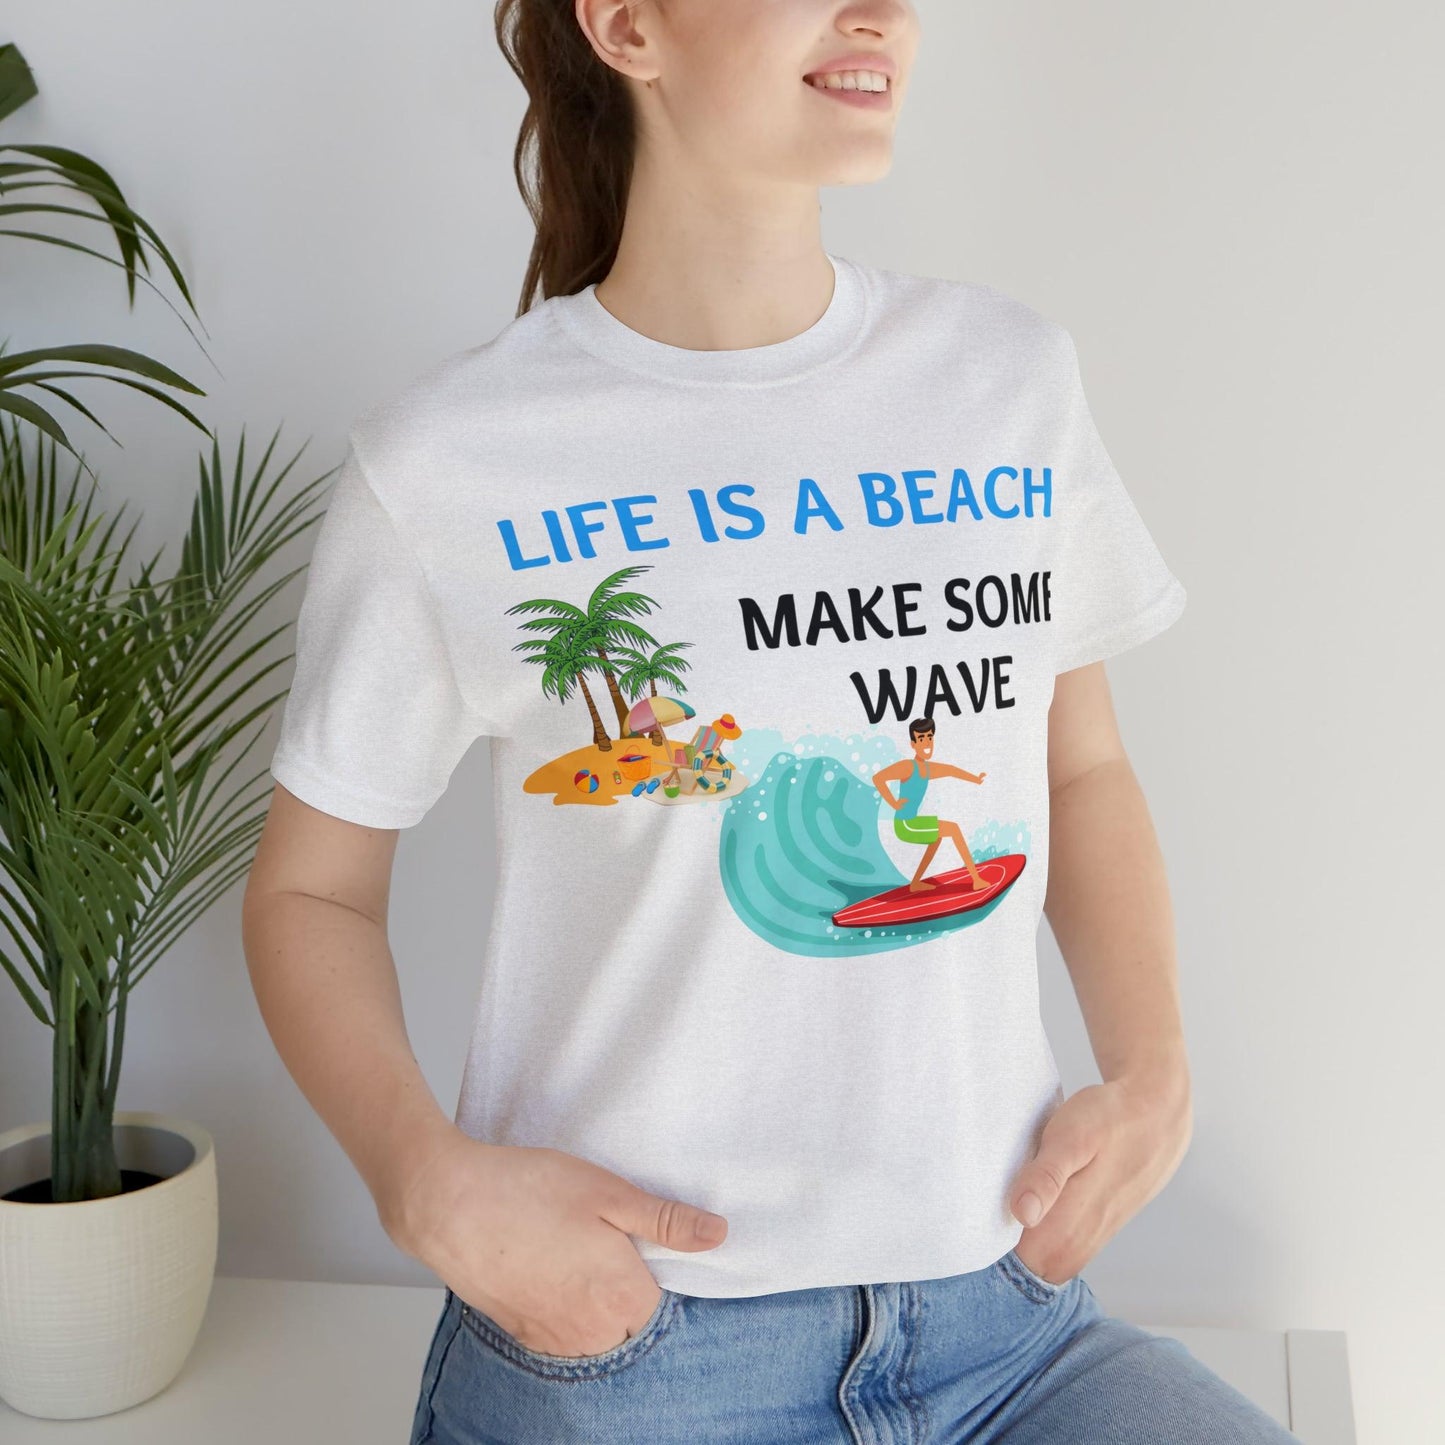 Life is a Beach shirt, Beach t-shirt, Summer shirt, Relaxing beachwear, Coastal fashion, Beach-inspired clothing, Beach adventure apparel - Giftsmojo